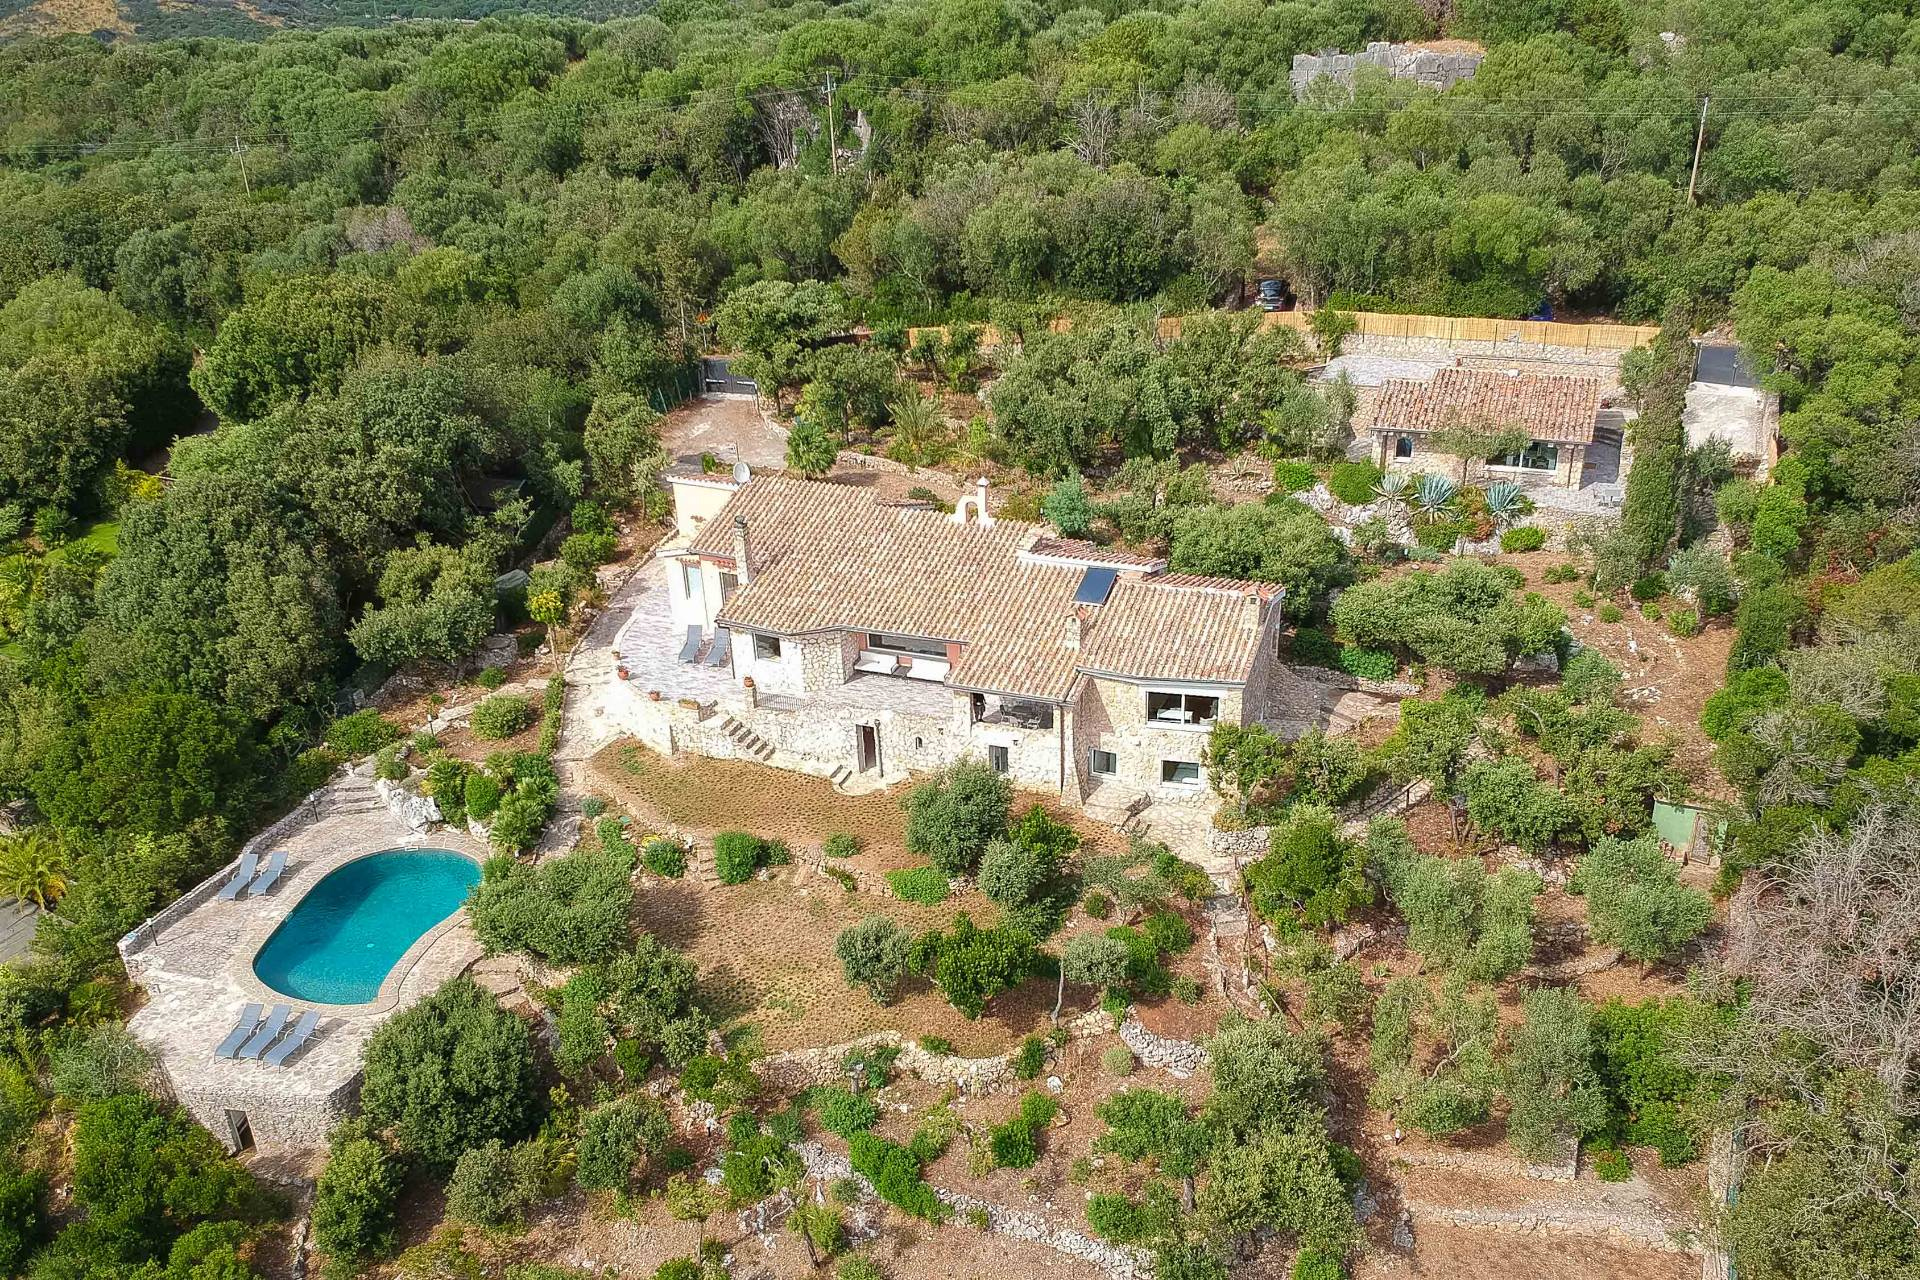 Villa in affitto a Orbetello, 11 locali, zona Zona: Ansedonia, prezzo € 35.000 | CambioCasa.it